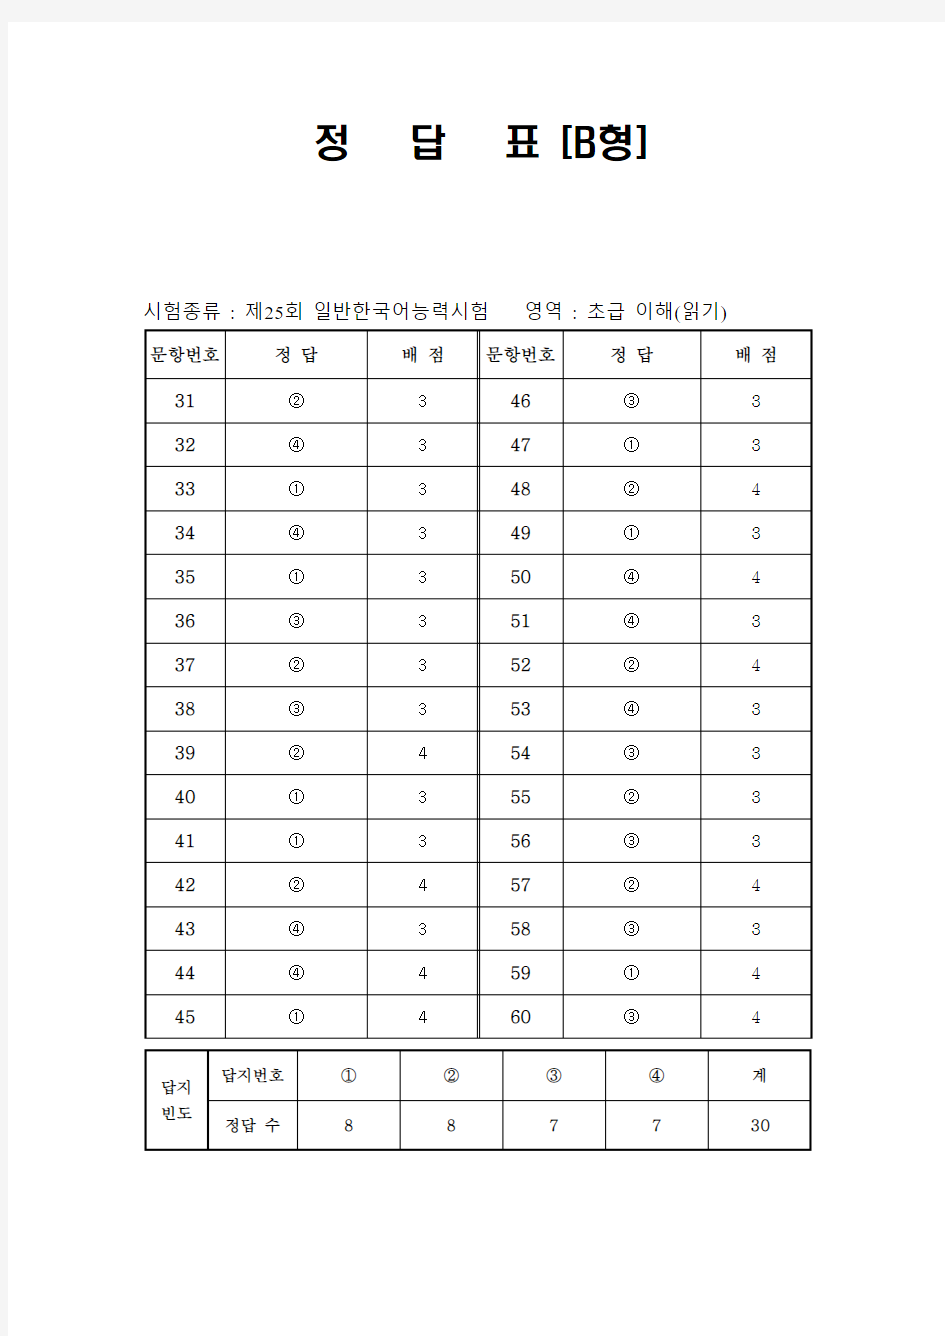 韩国语能力考试(TOPIK)真题资料【初级】25届初级-阅读-答案